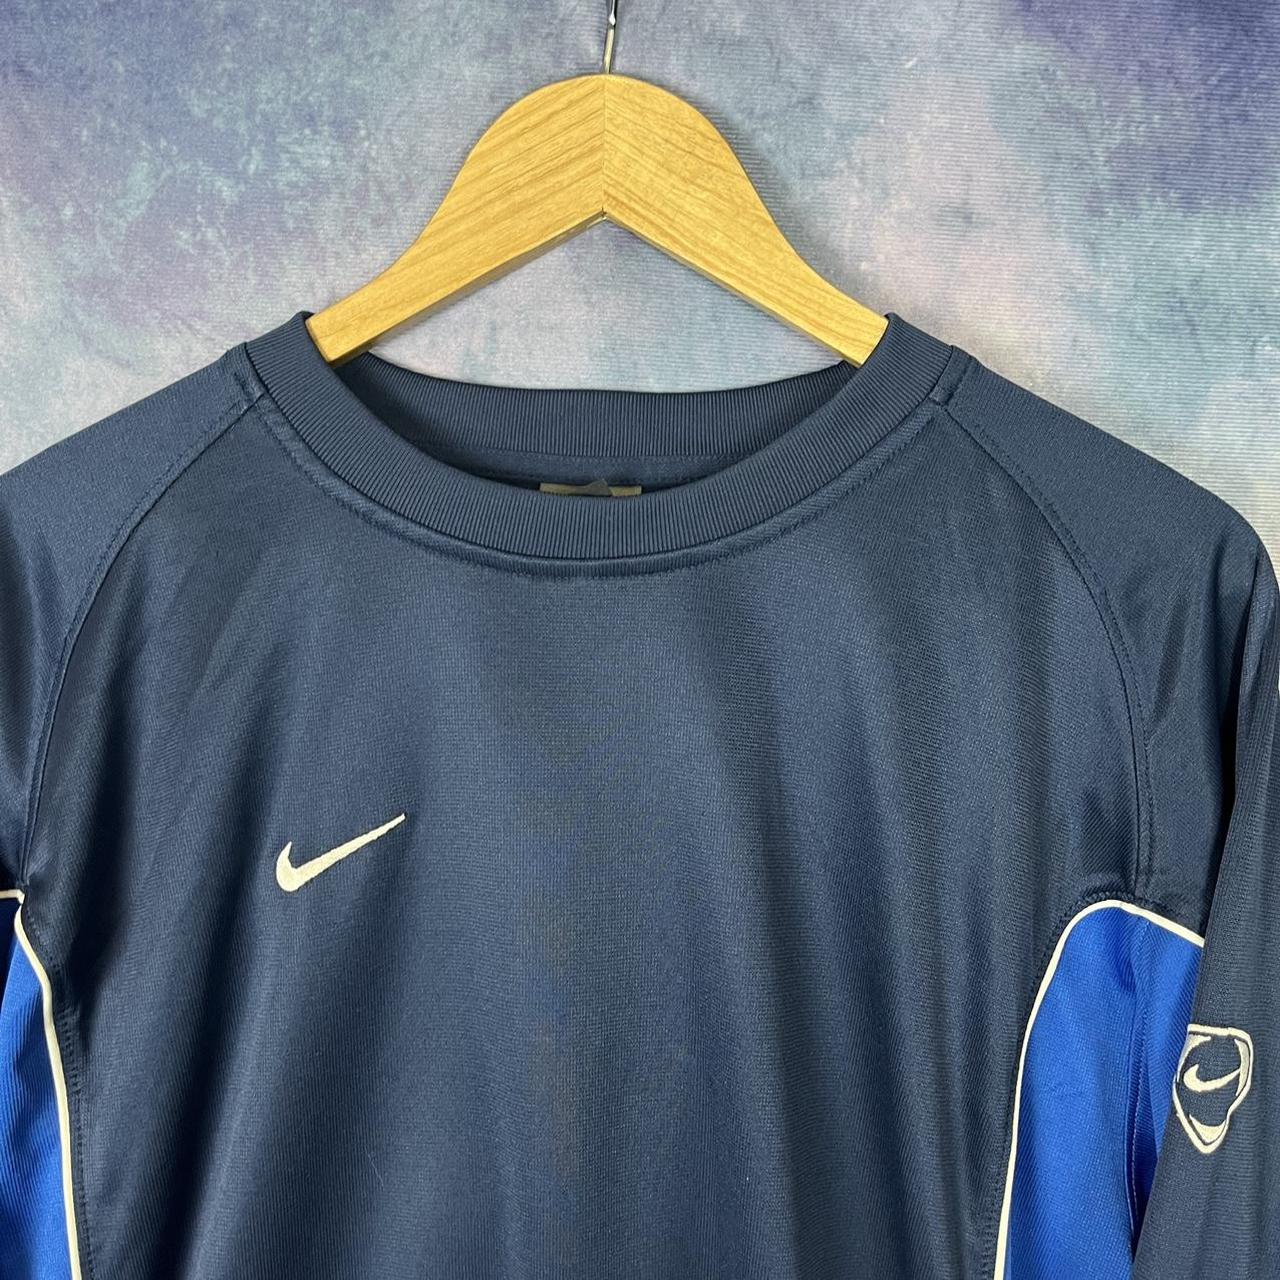 Vintage Y2K Nike football too long sleeve t shirt... - Depop